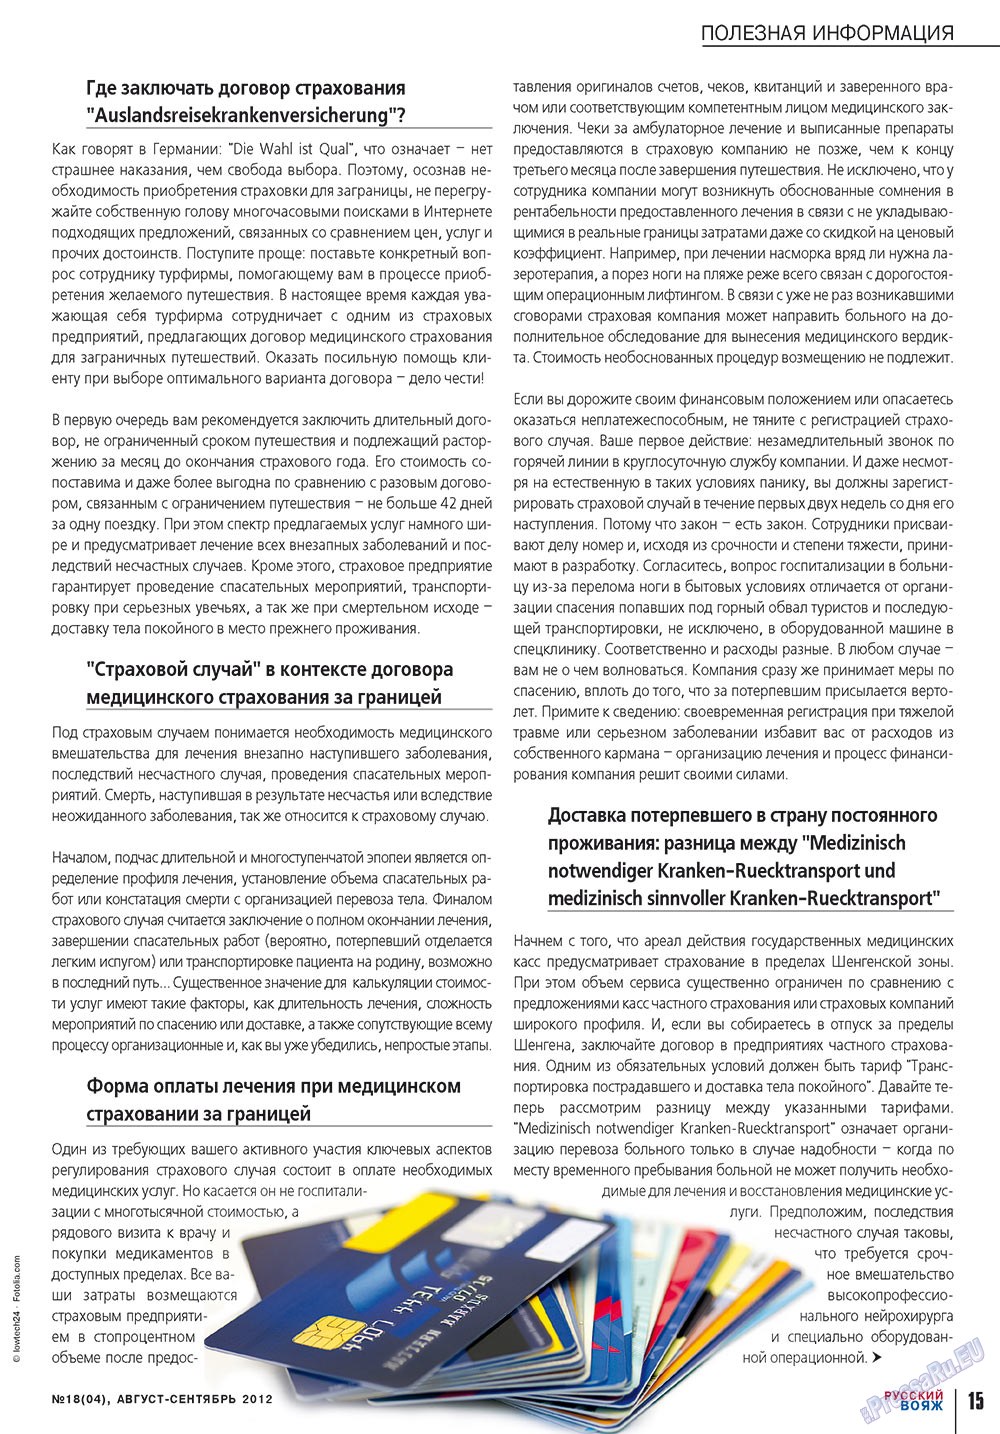 Русский вояж, журнал. 2012 №18 стр.15